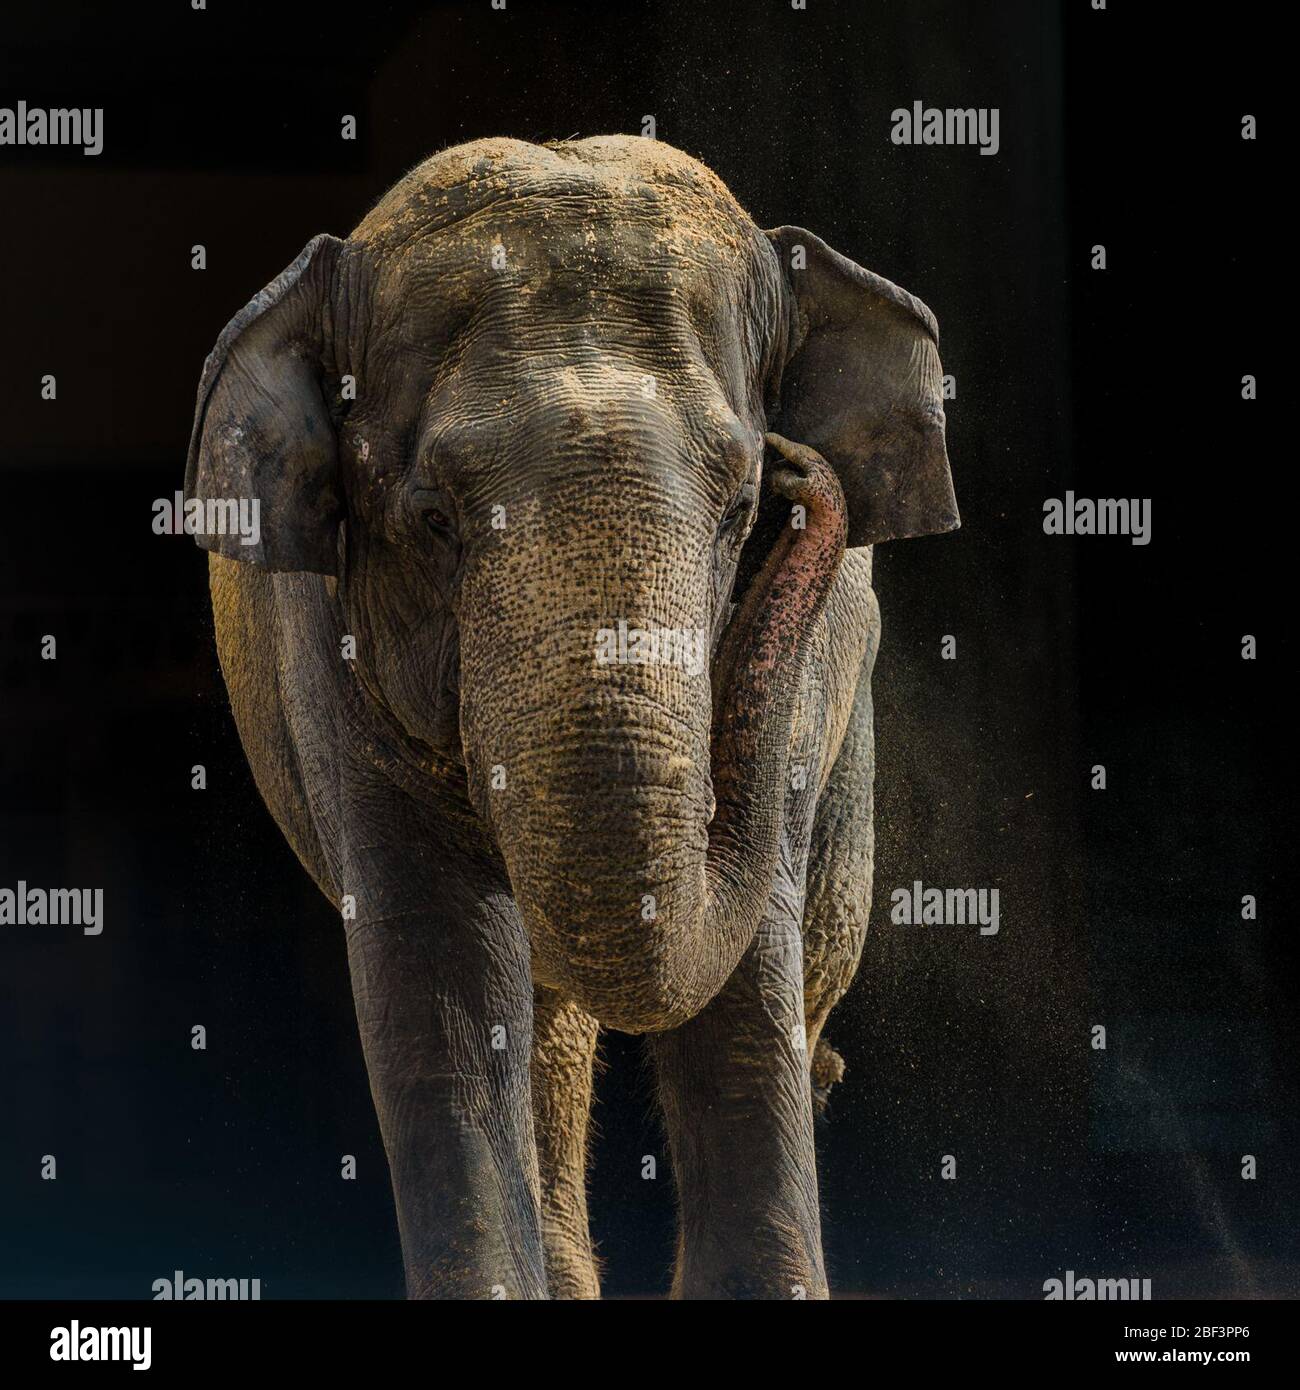 Asian Elephant. Species: maximus,Genus: Elephas,Family: Elephantidae,Order: Proboscidea,Class: Mammalia,Phylum: Chordata,Kingdom: Animalia,Asian Elephant,Elephant,Shanthi,female Stock Photo